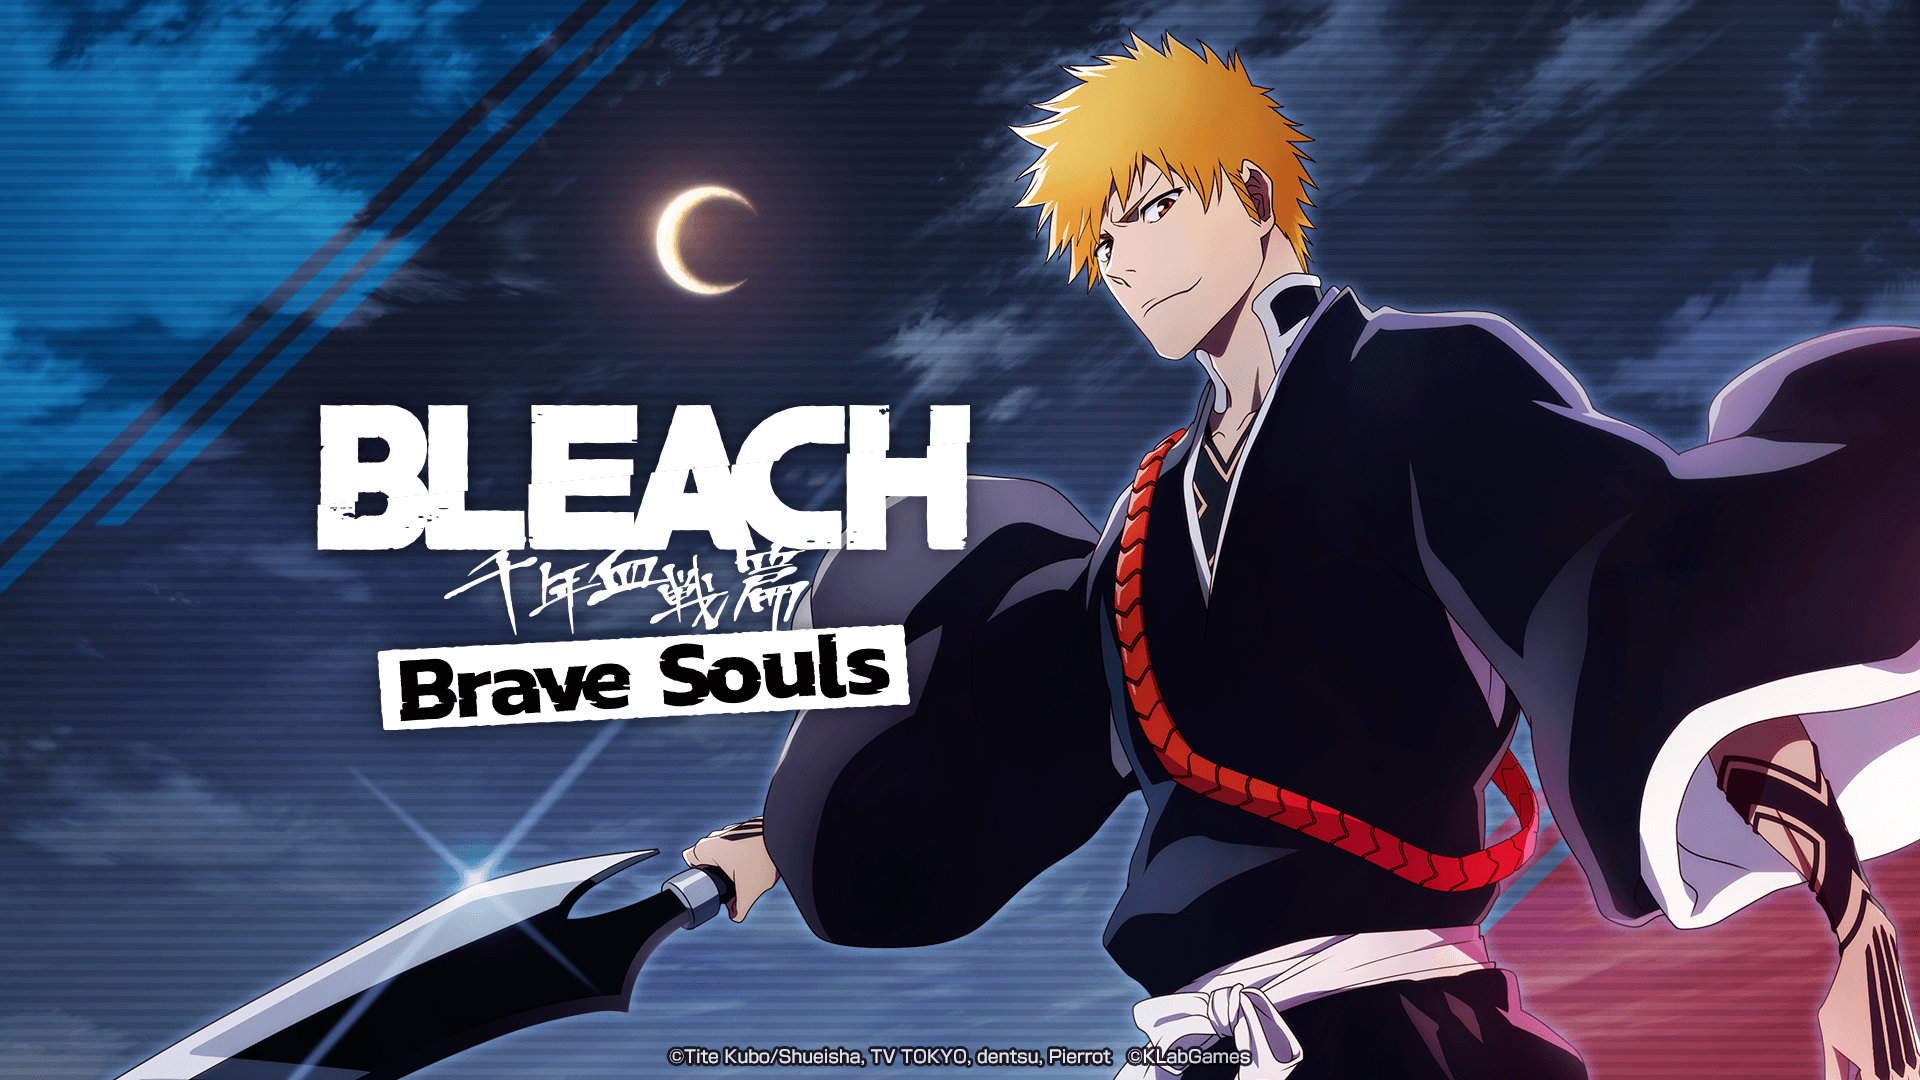 "Bleach Brave Souls célèbre la sortie de BLEACH TV Animation Series